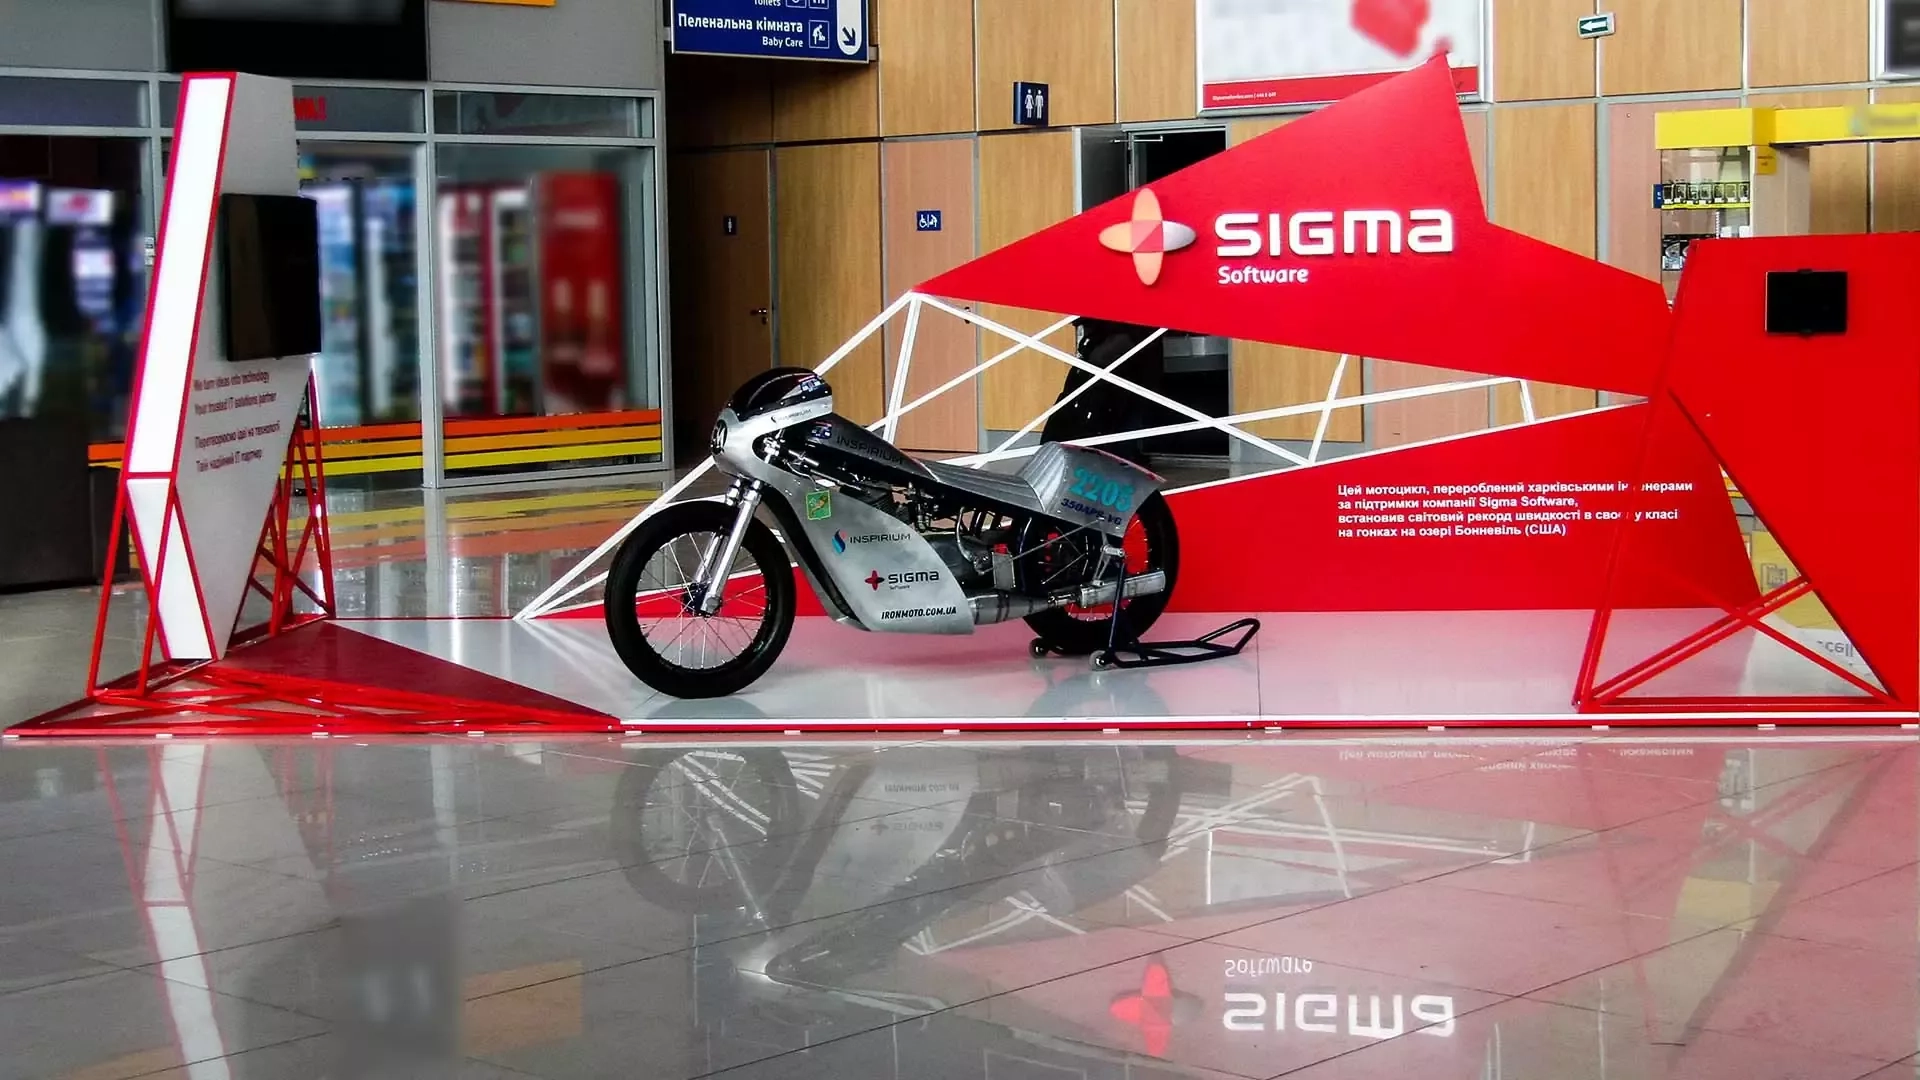 На мотоцикле в аэропорту – нестандартное размещение для SIGMA SOFTWARE.